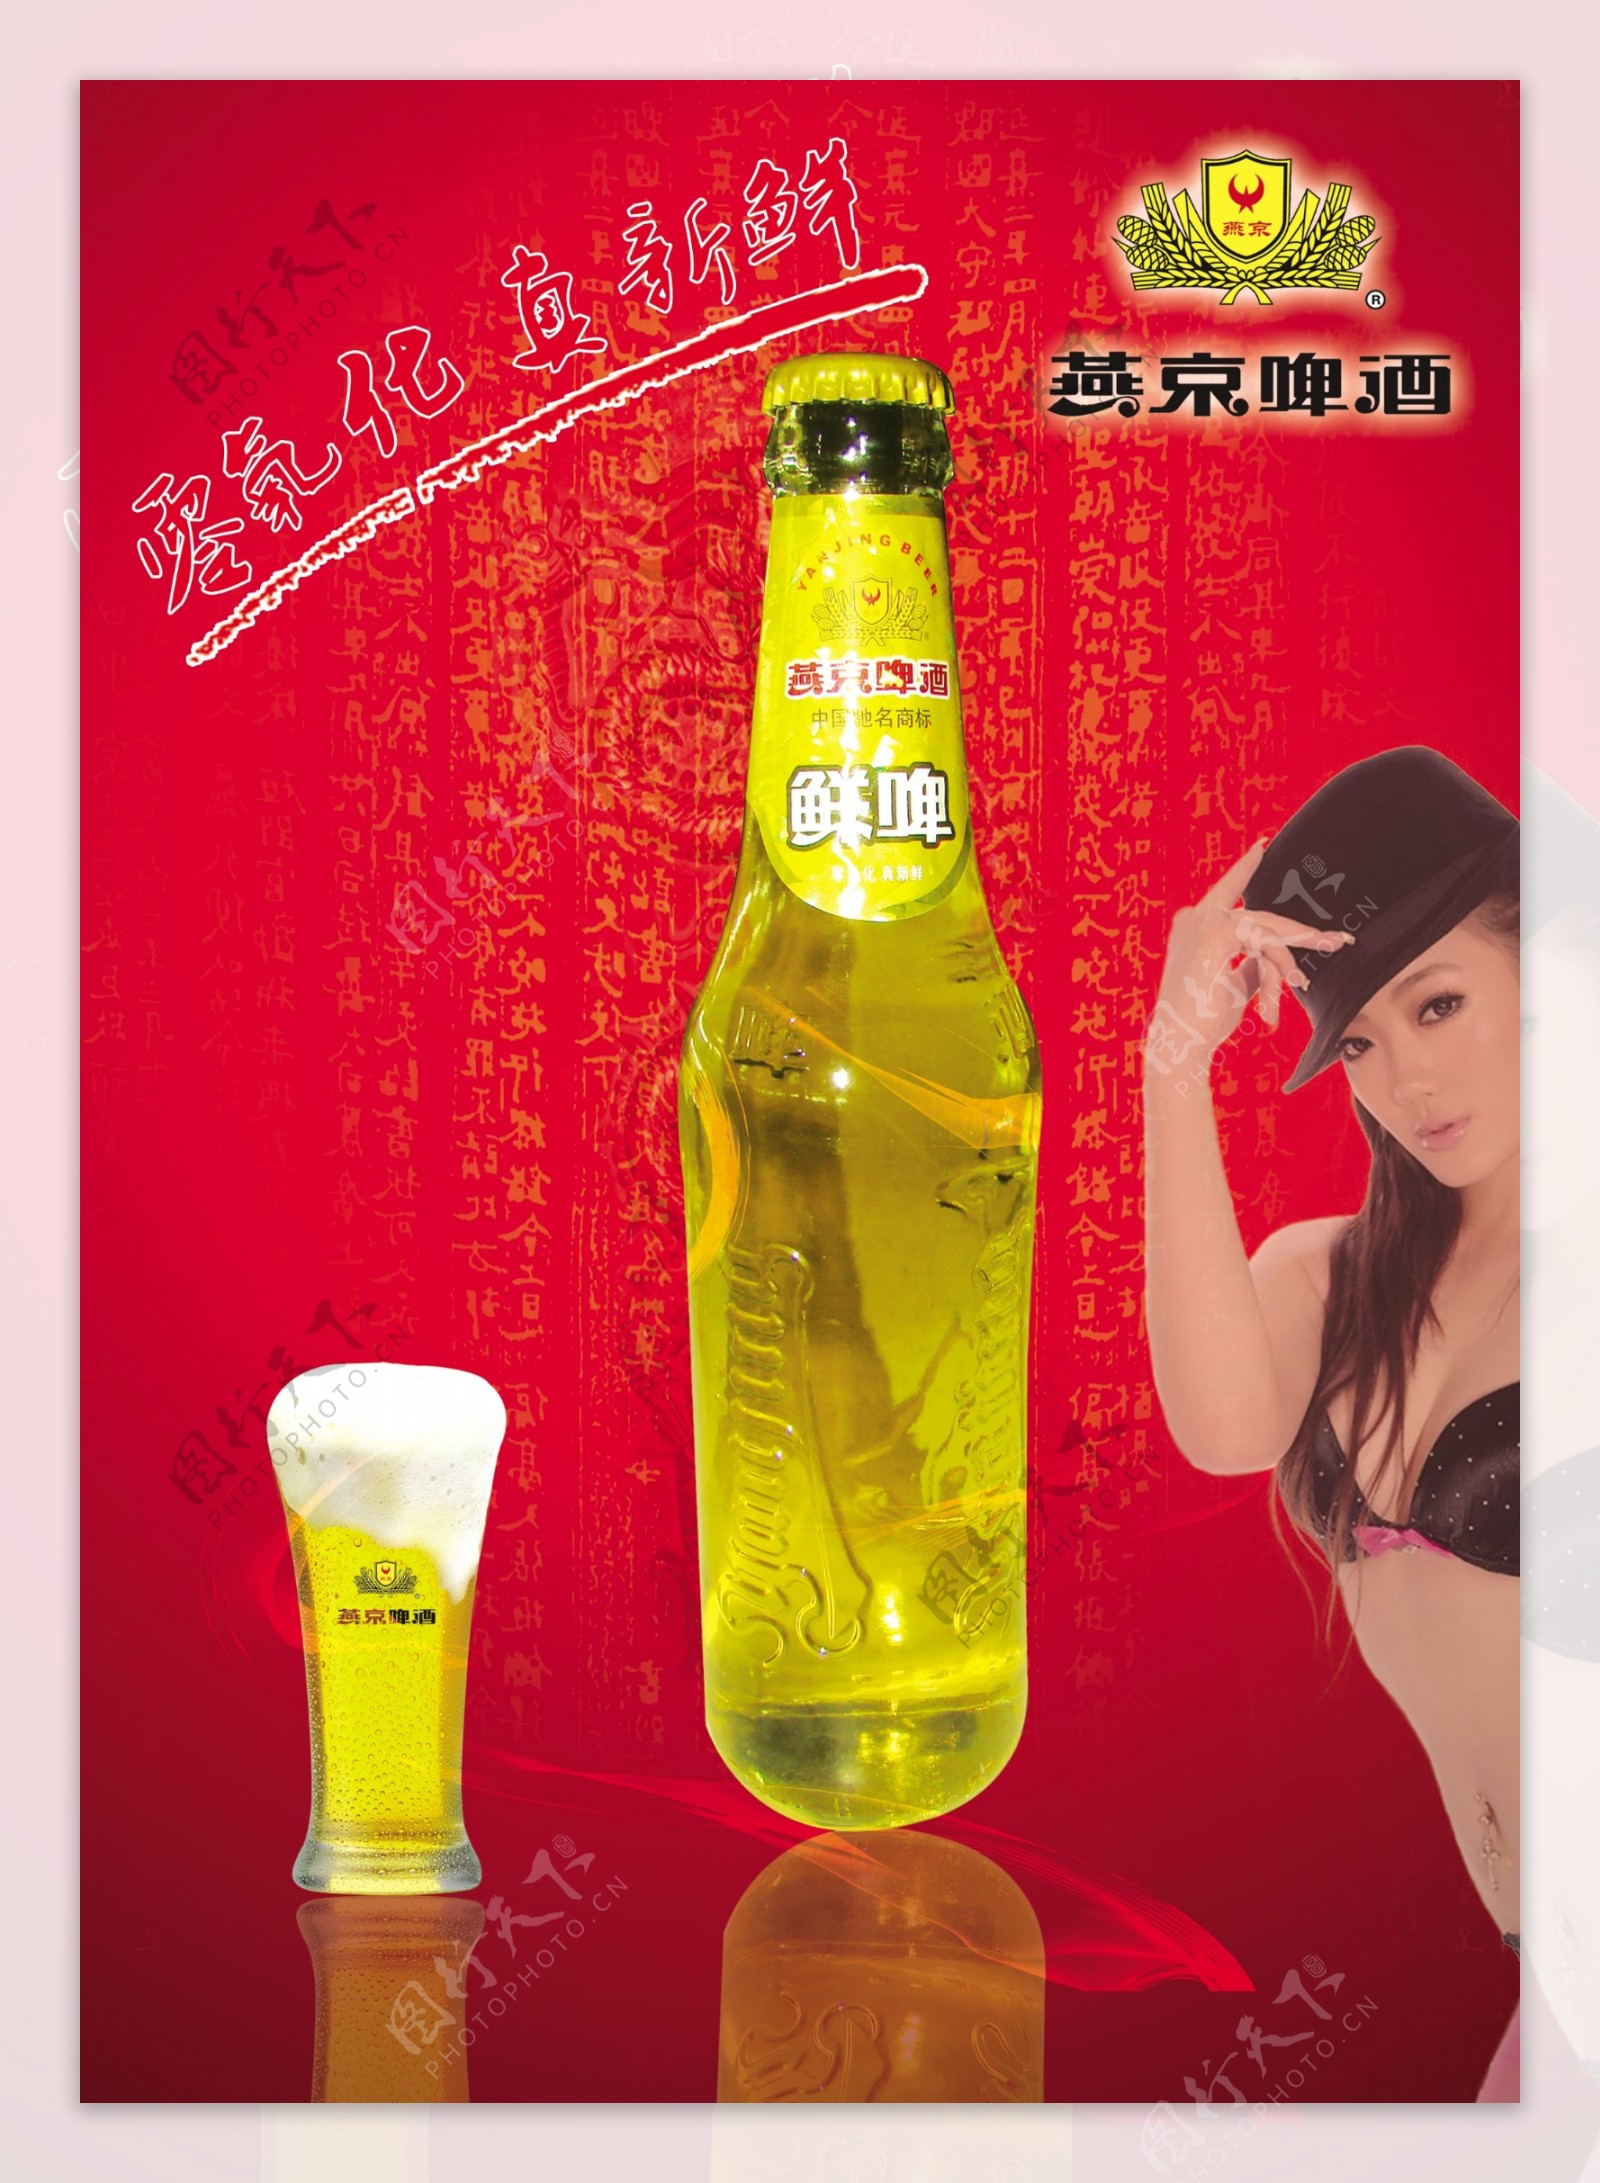 燕京啤酒广告